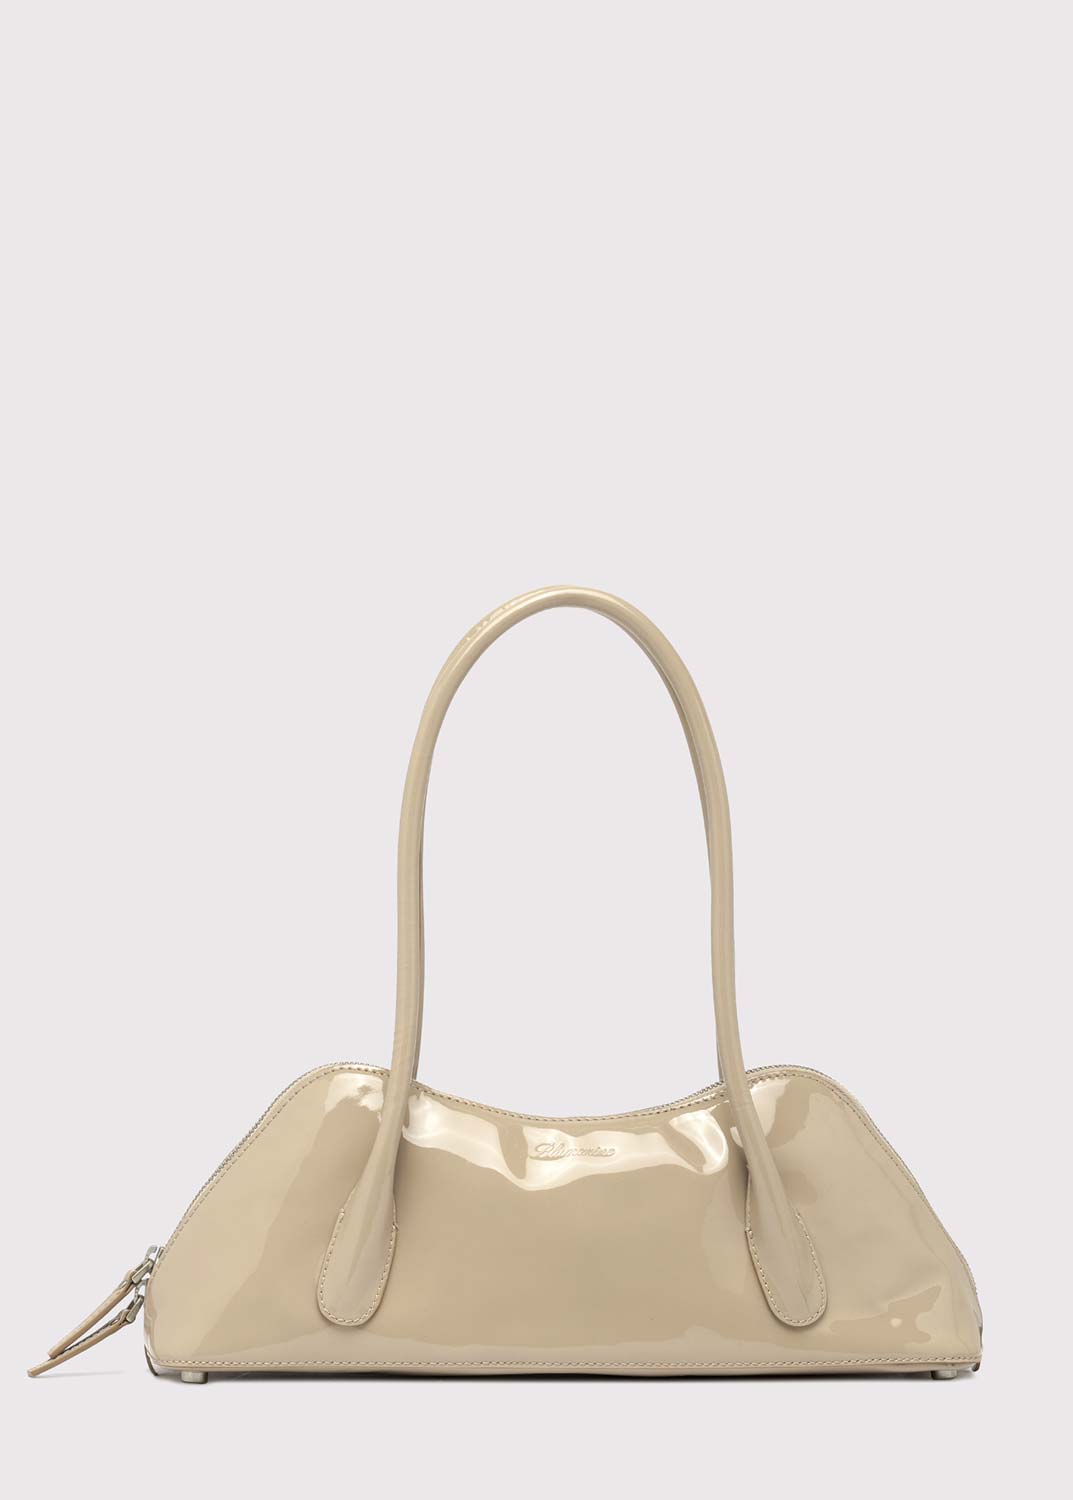 Louis Vuitton Patent Leather Bag